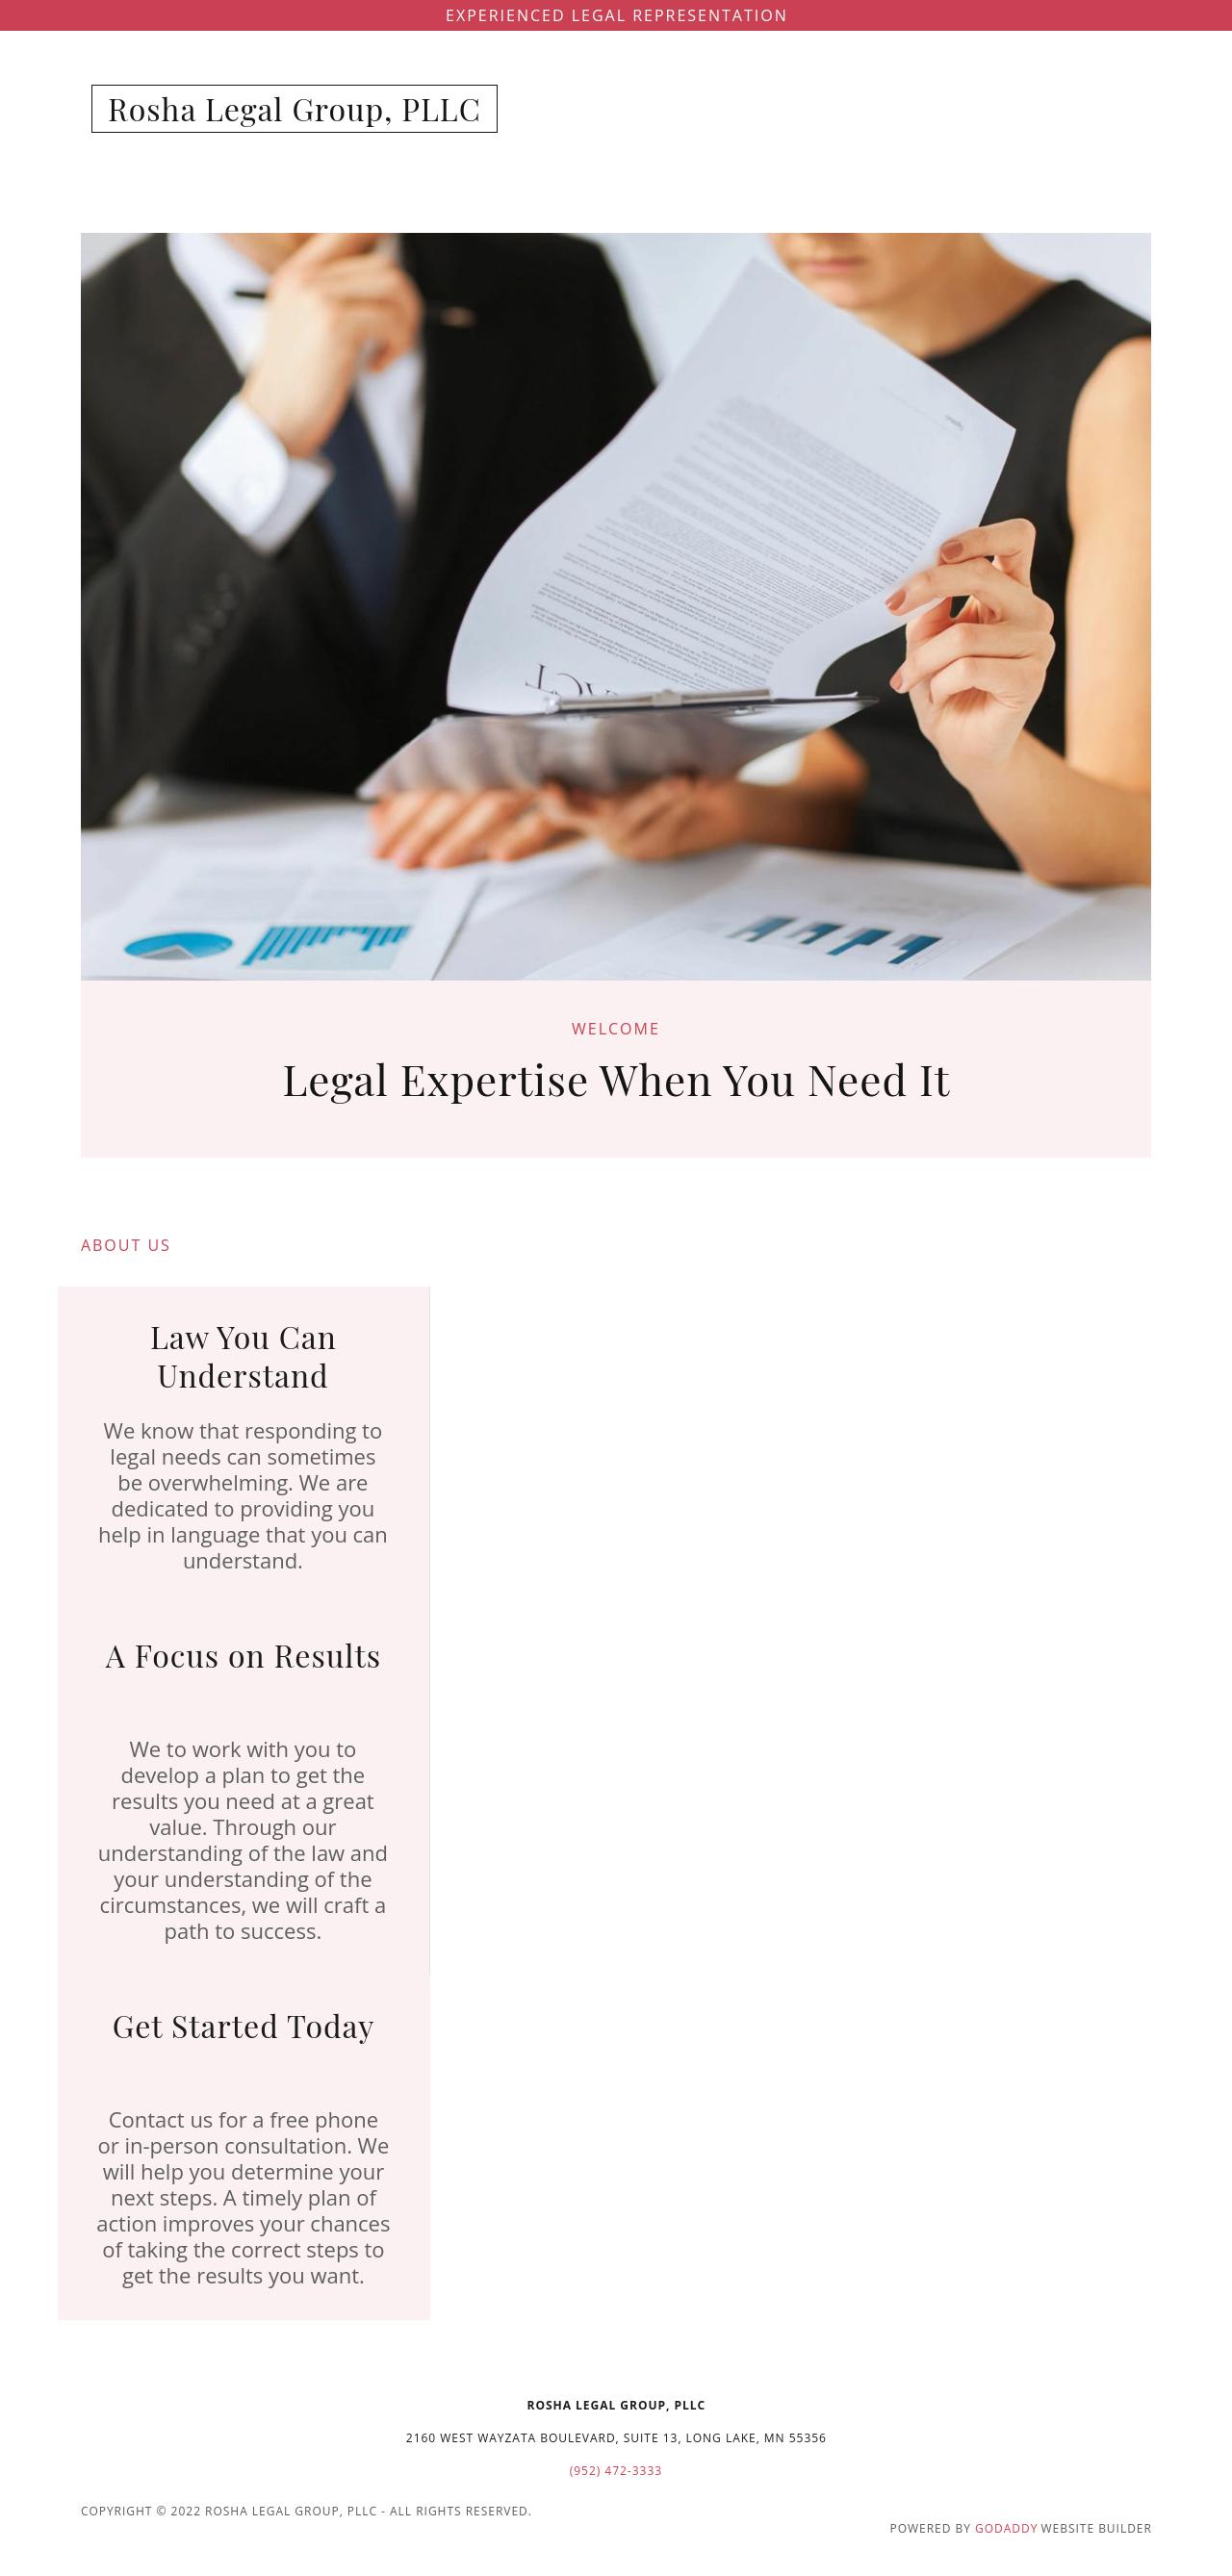 The Rosha Legal Group, P.L.L.C. - Long Lake MN Lawyers